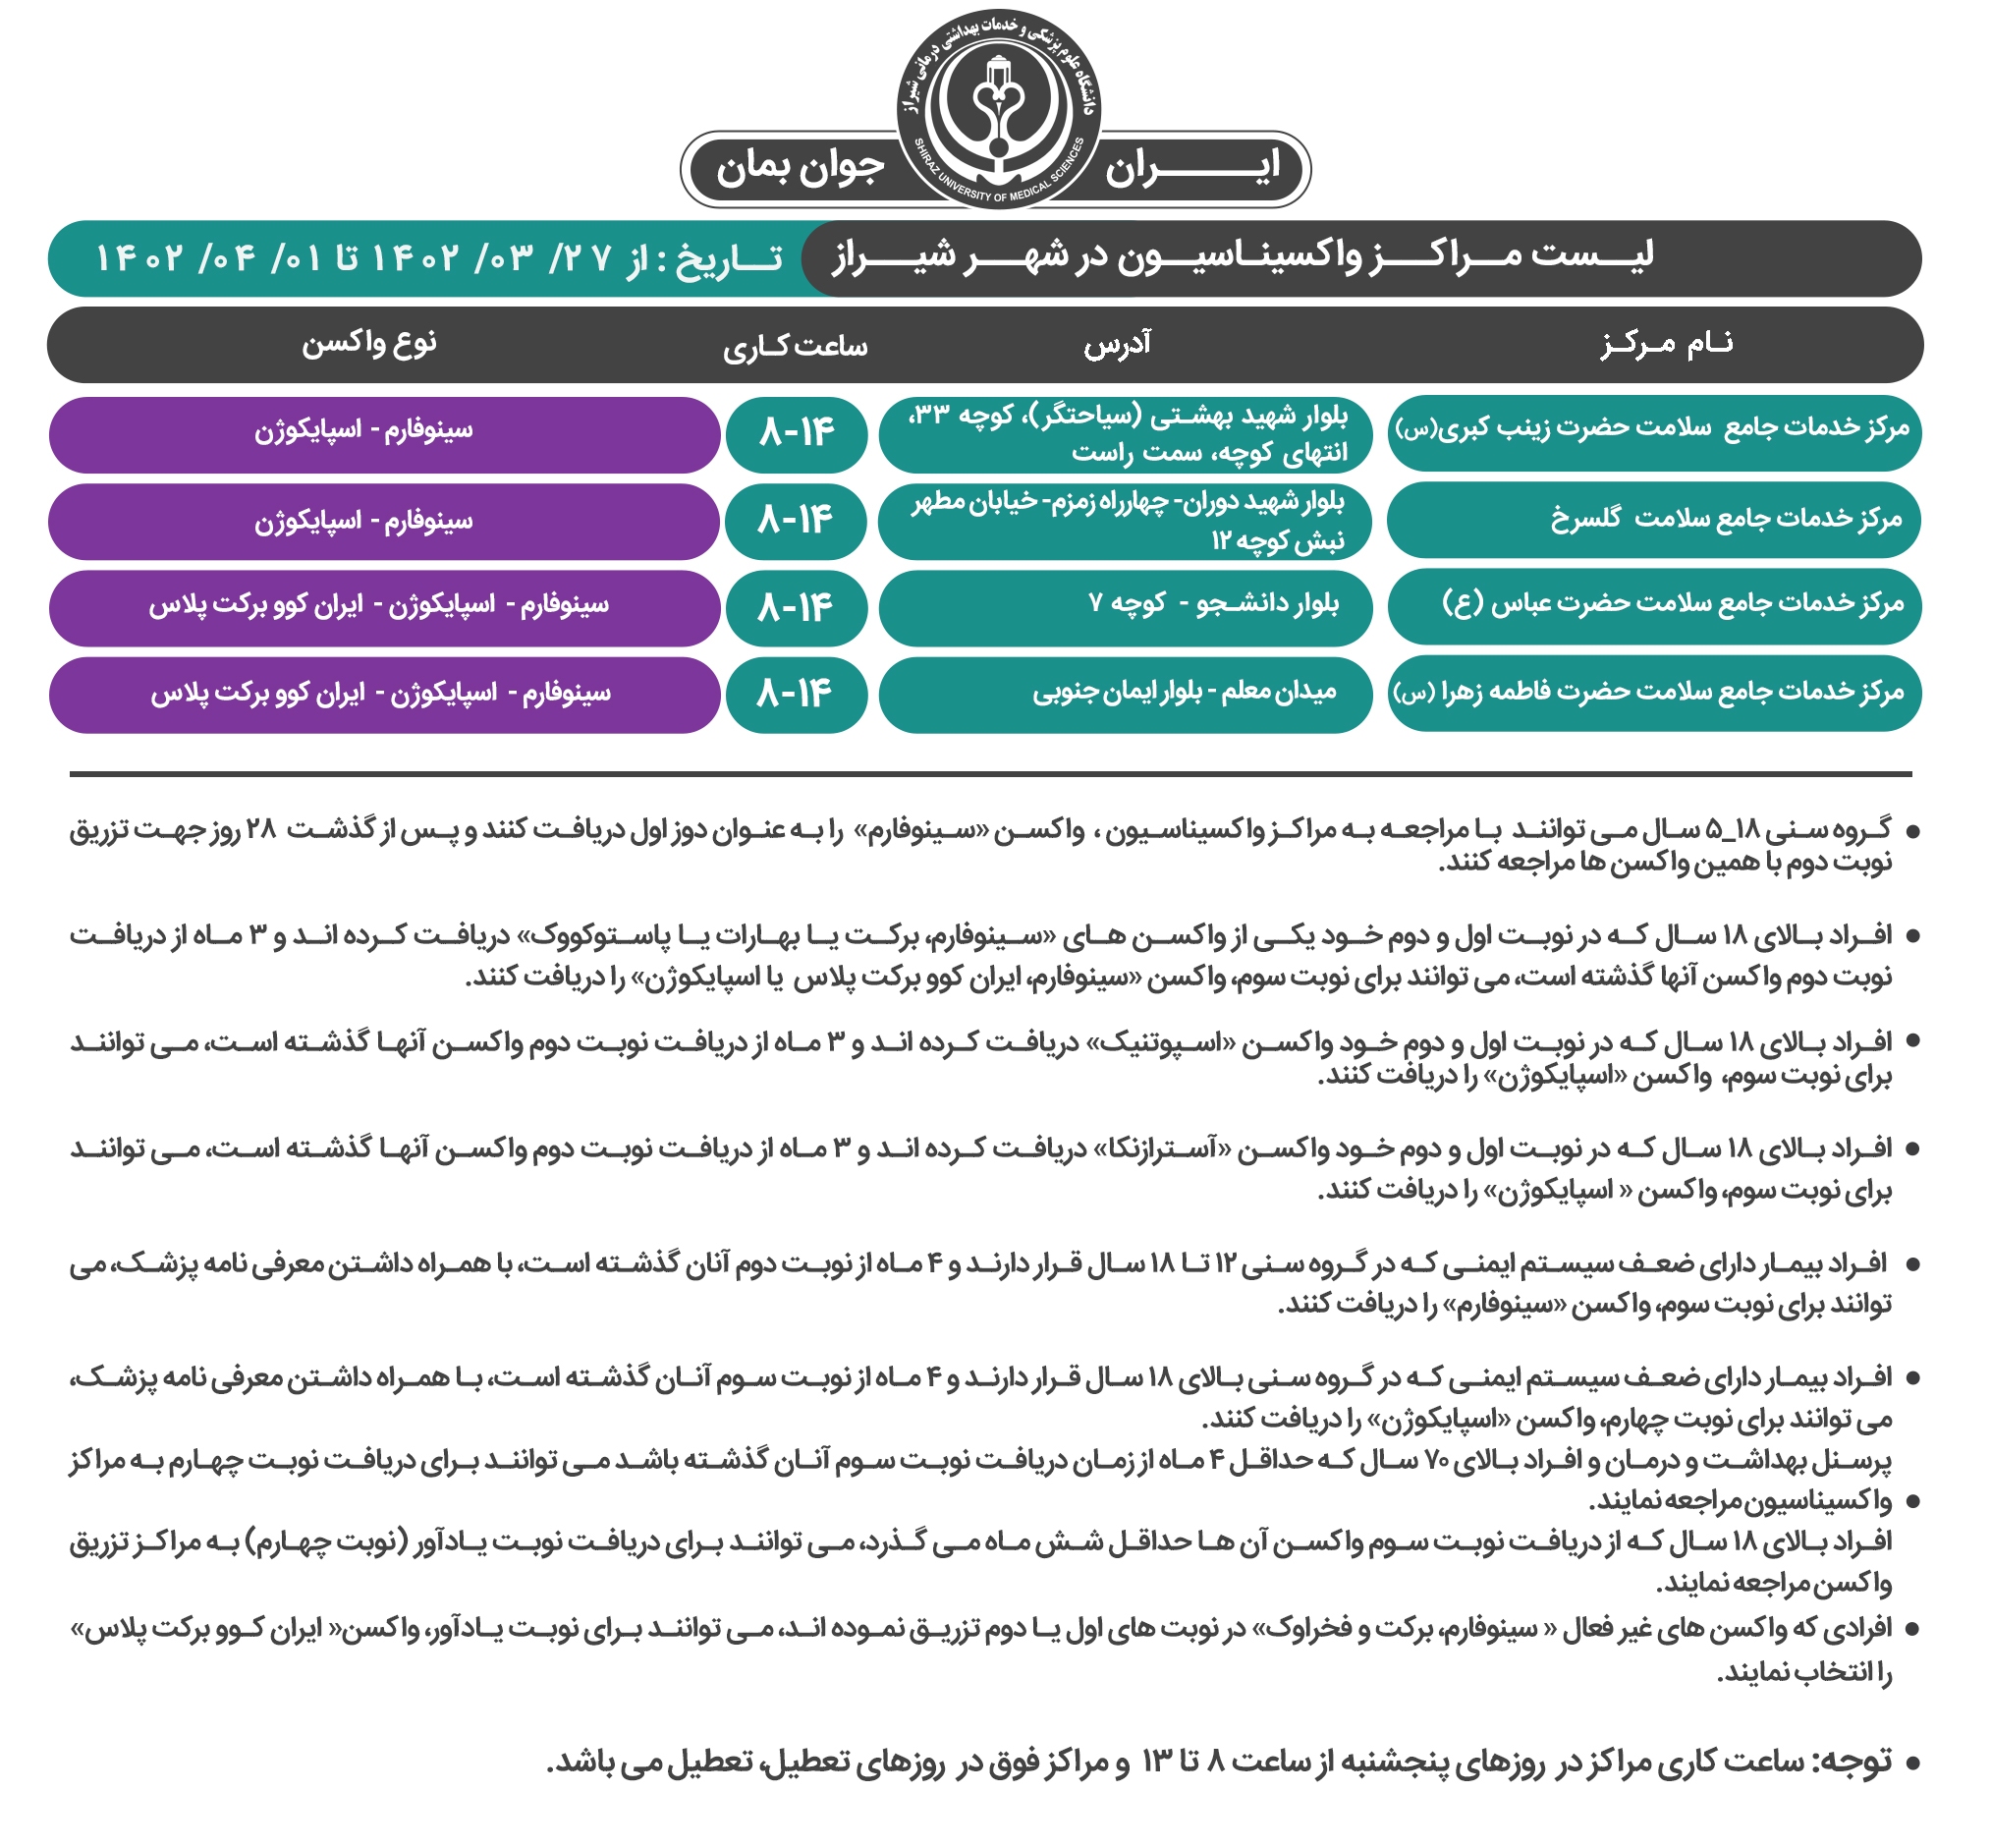 اعلام مراکز واکسیناسیون کرونا در شیراز؛ یک شنبه ۲۸ خرداد